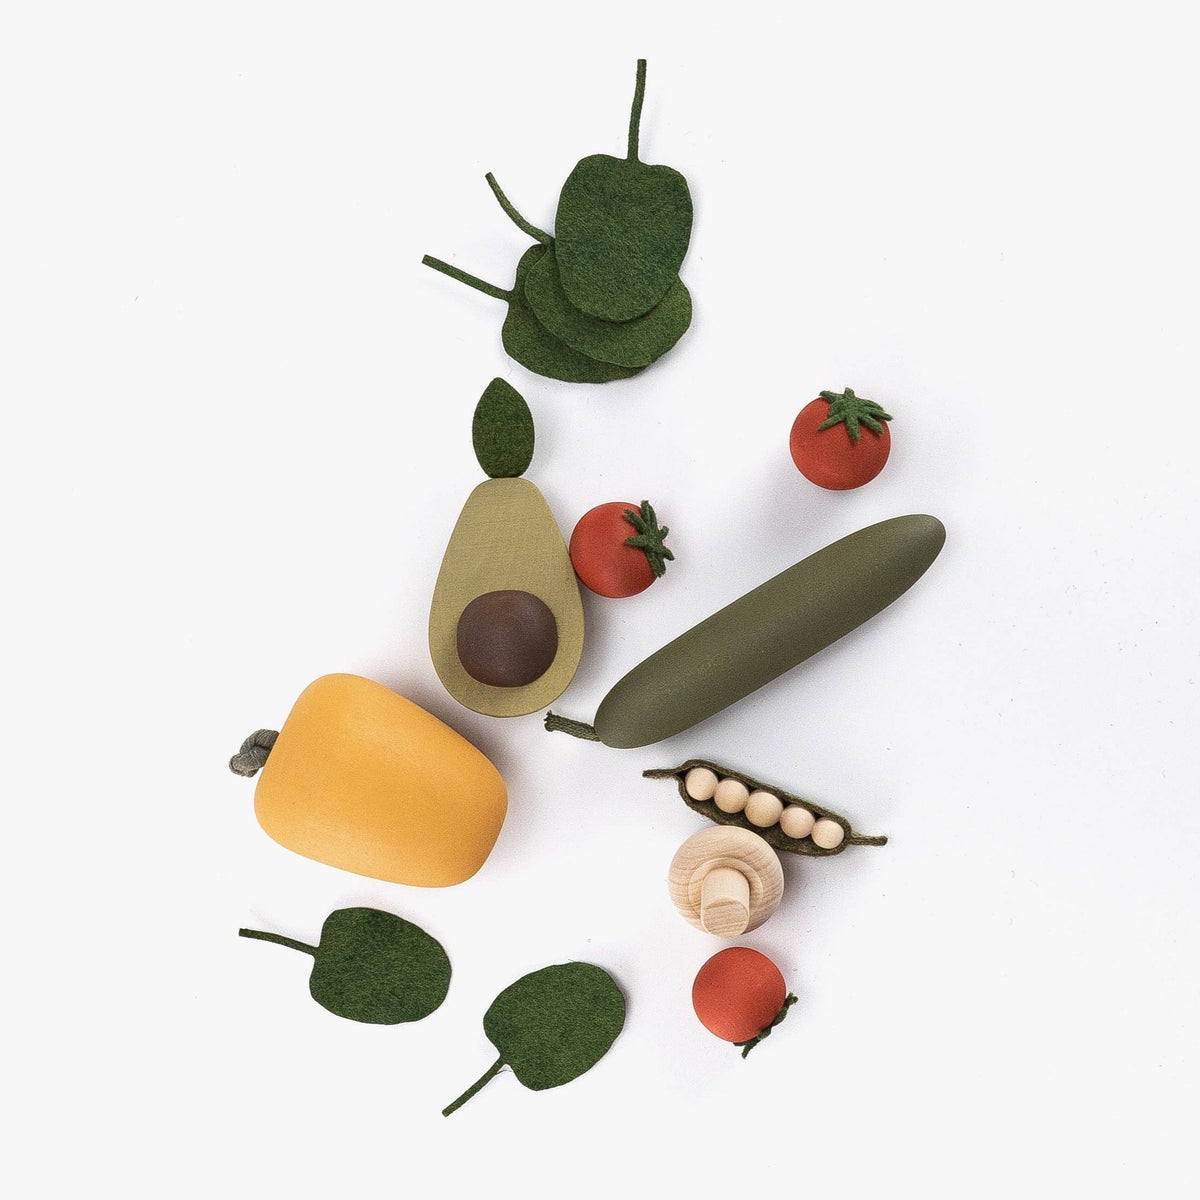 Wooden Vegetables/Salad Play Set